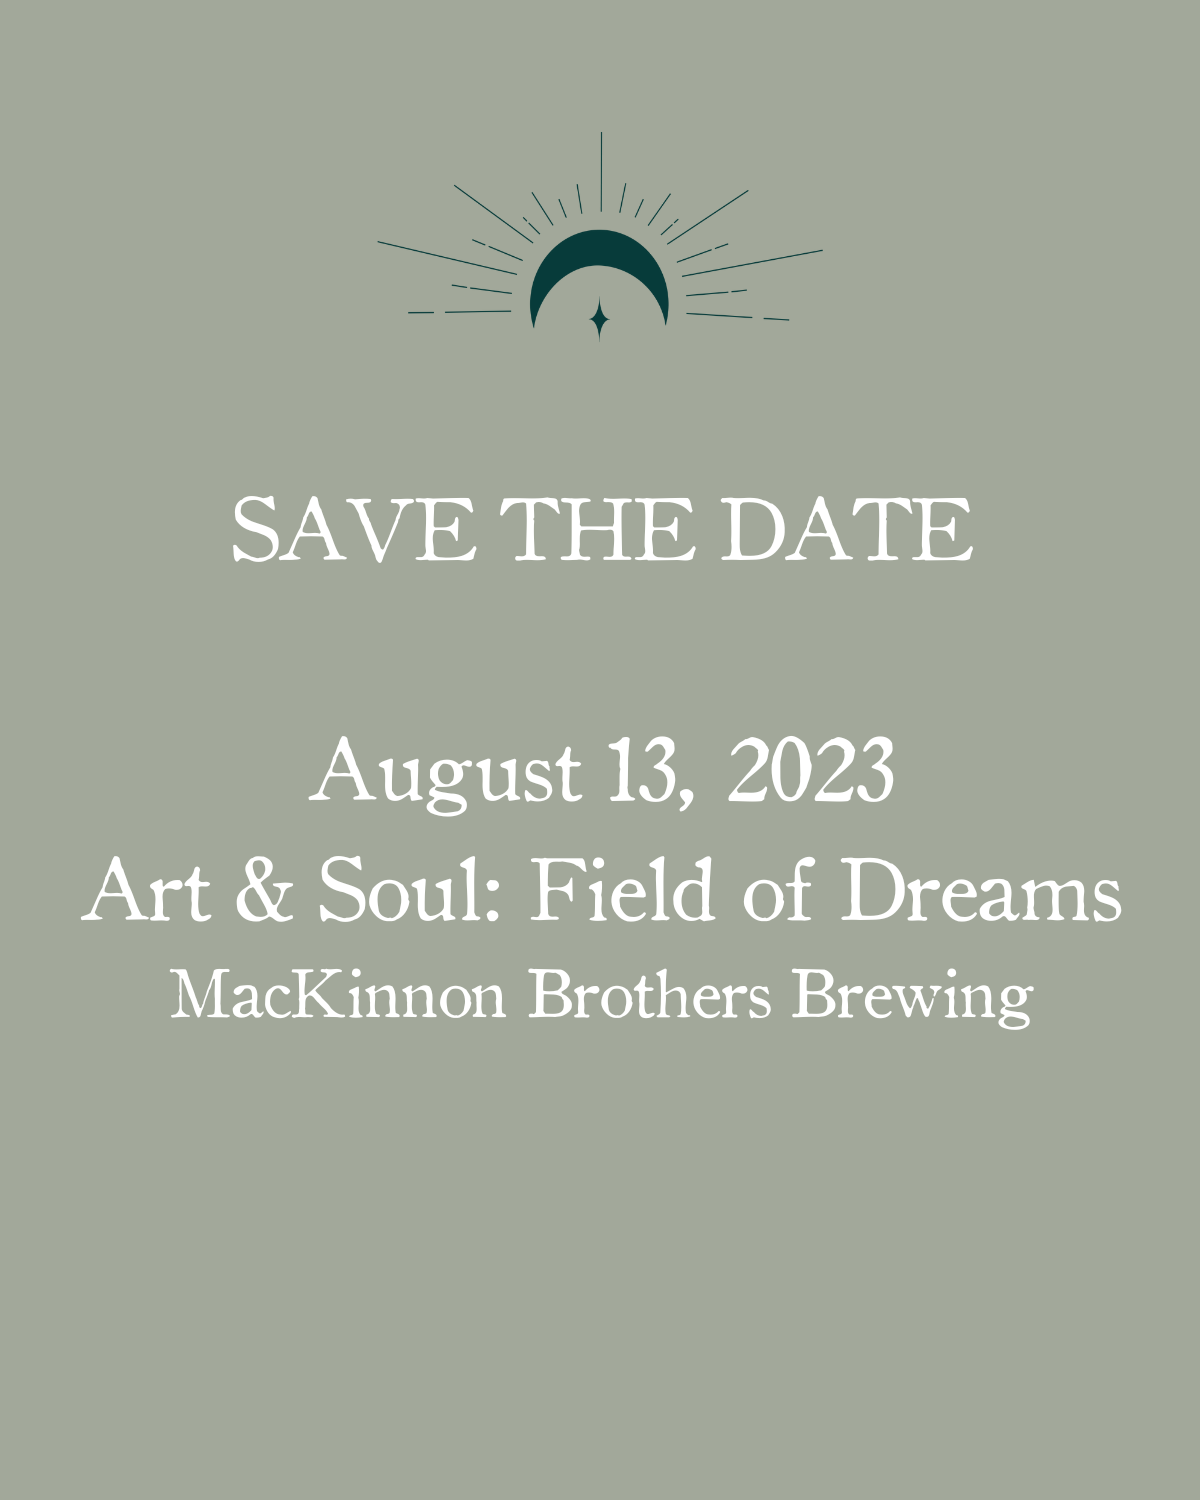 Art & Soul: Field of Dreams Aug 13th